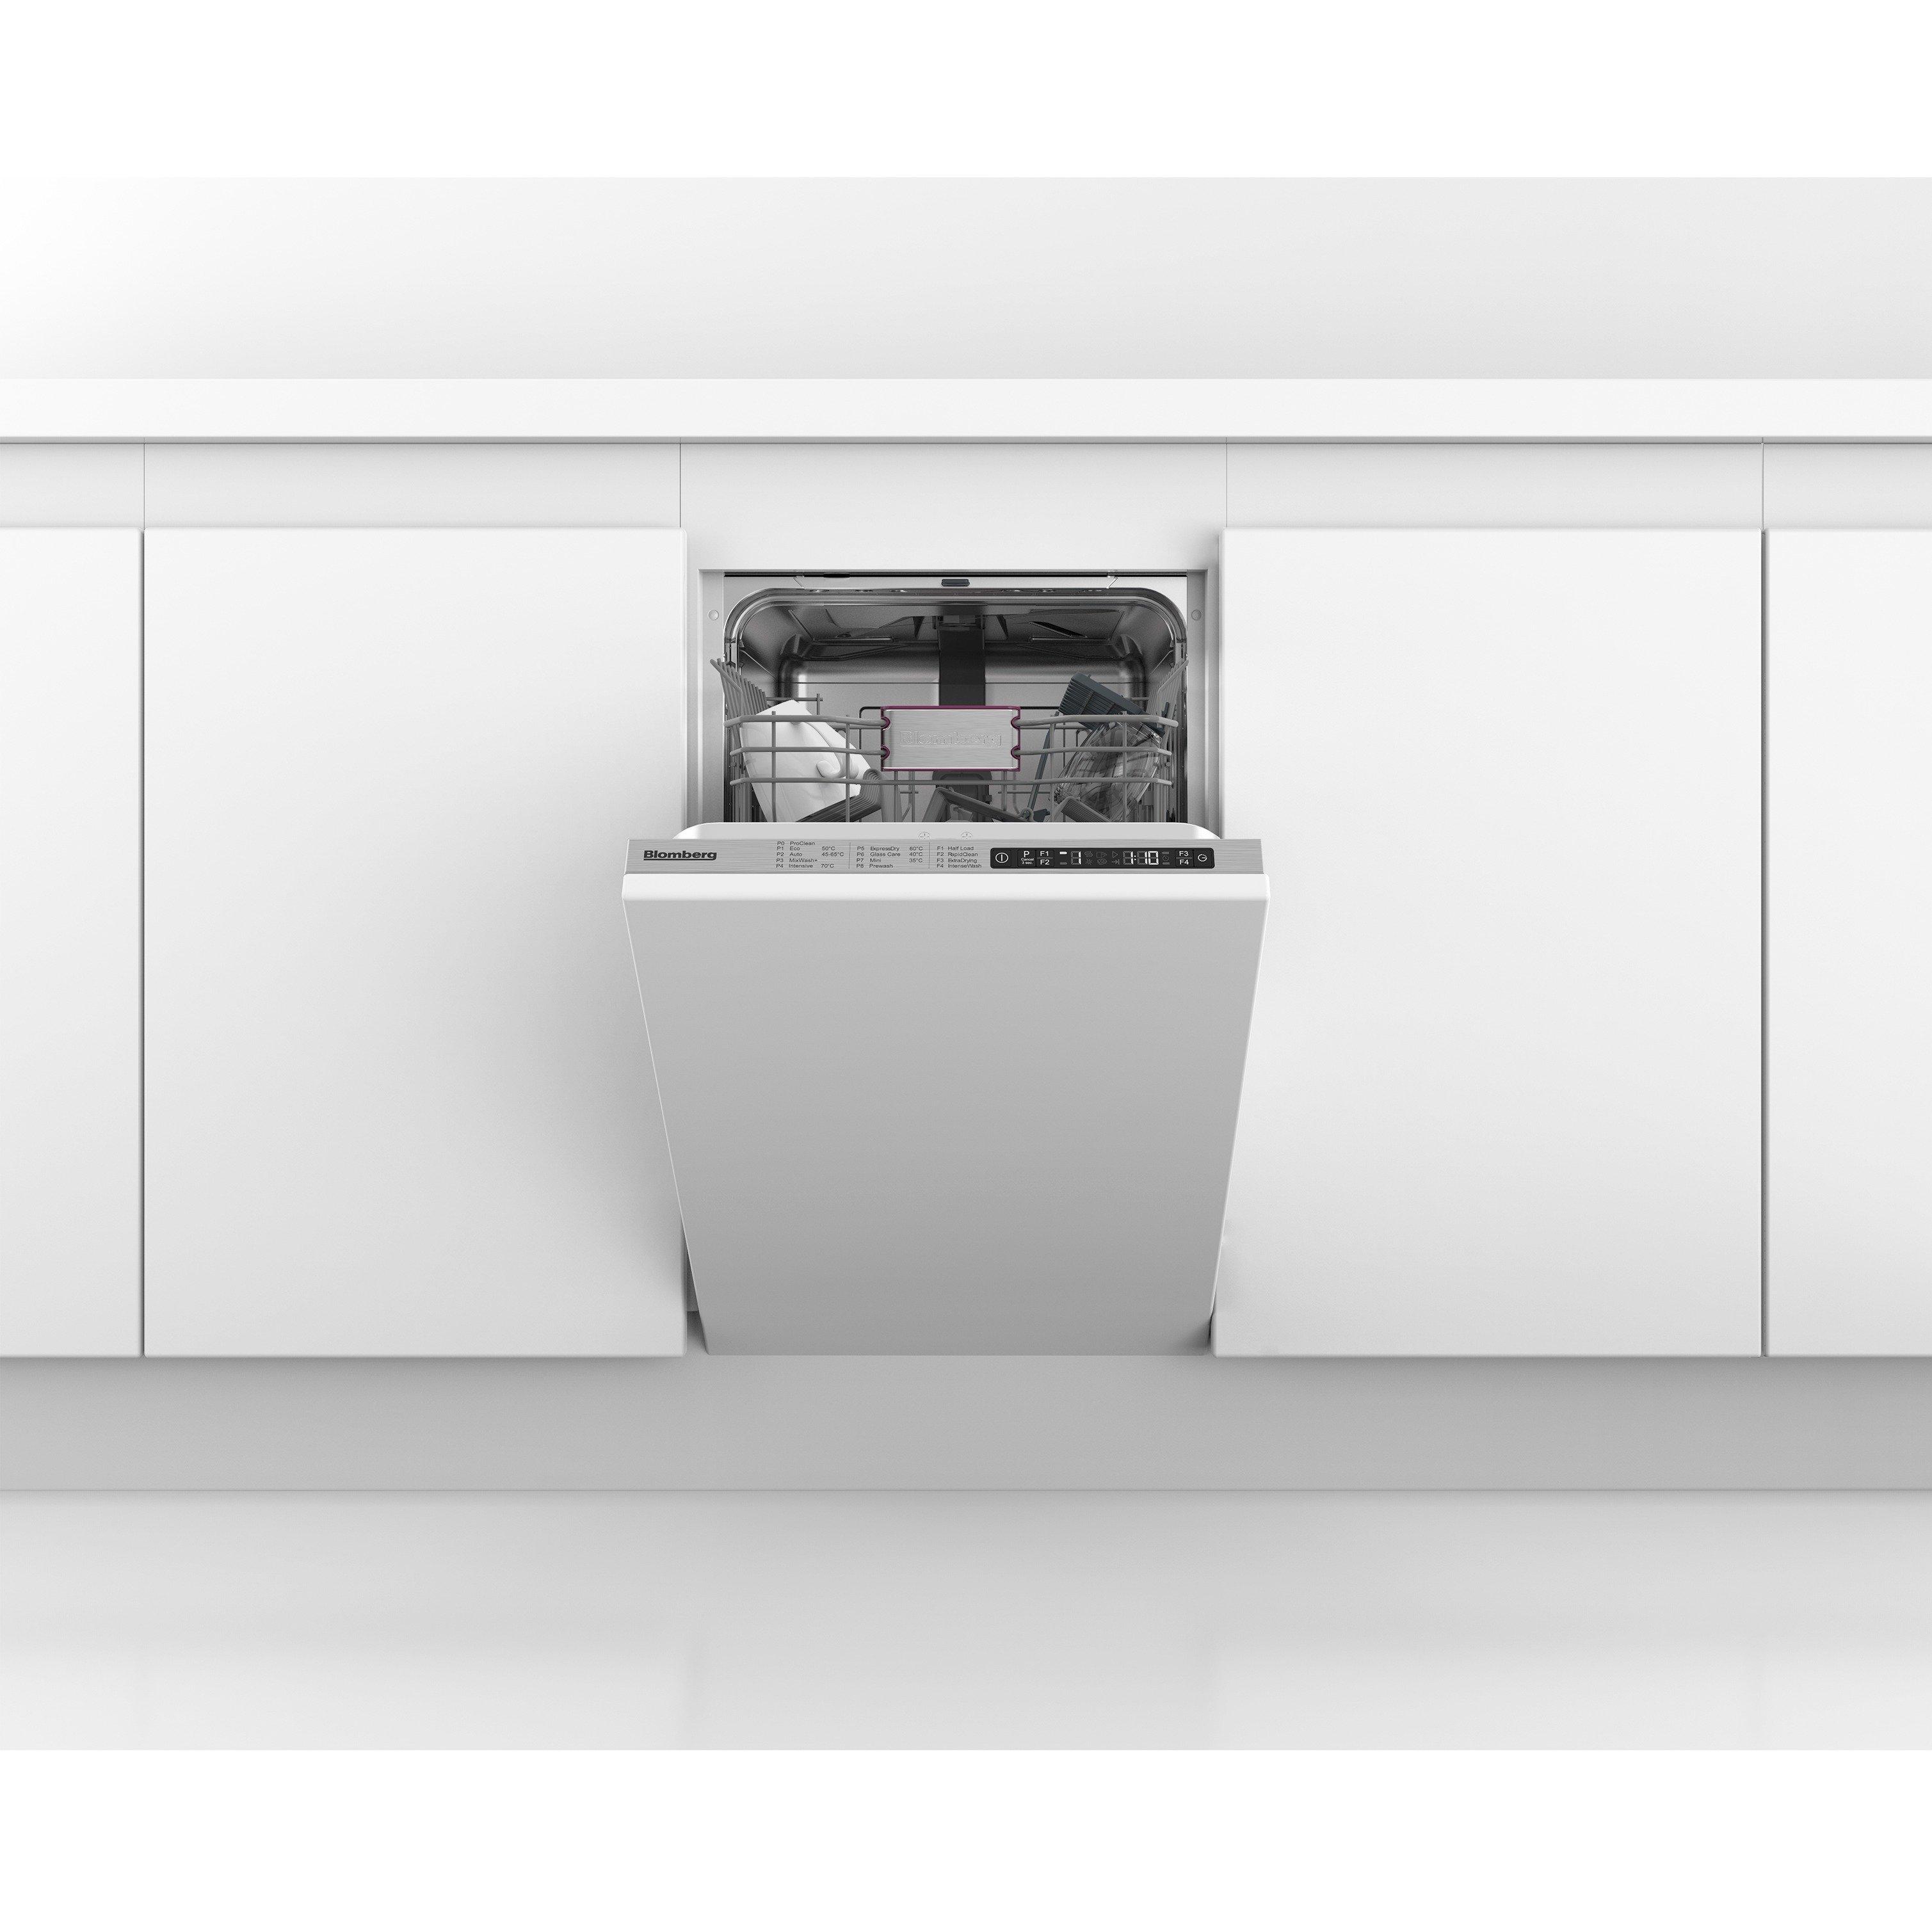 Slimline Dishwashers Ultra Slimline Dishwasher Euronics